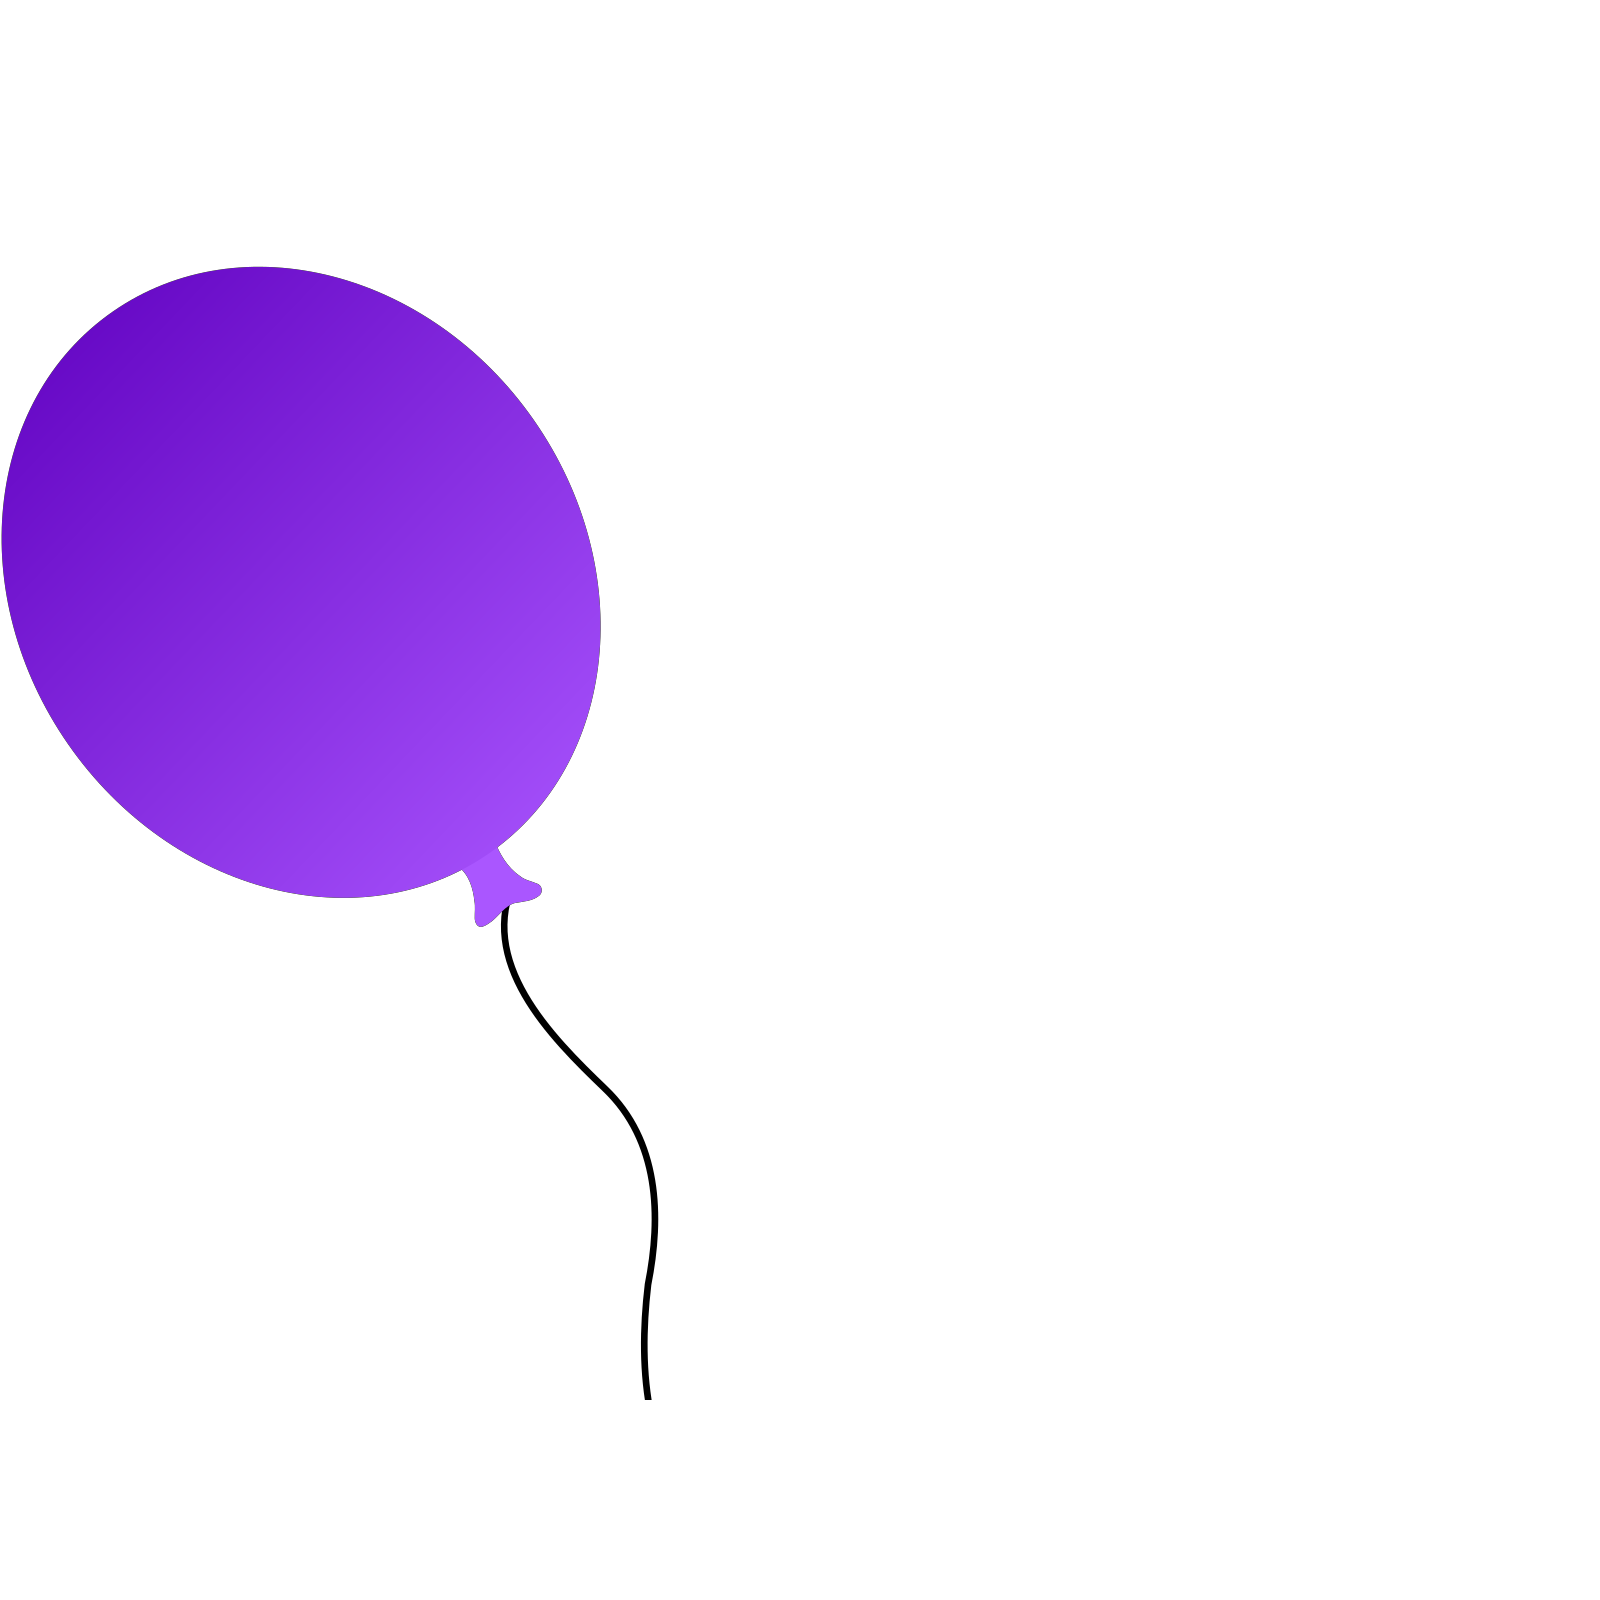 واحد البالون الأرجواني PNG صورة خلفية